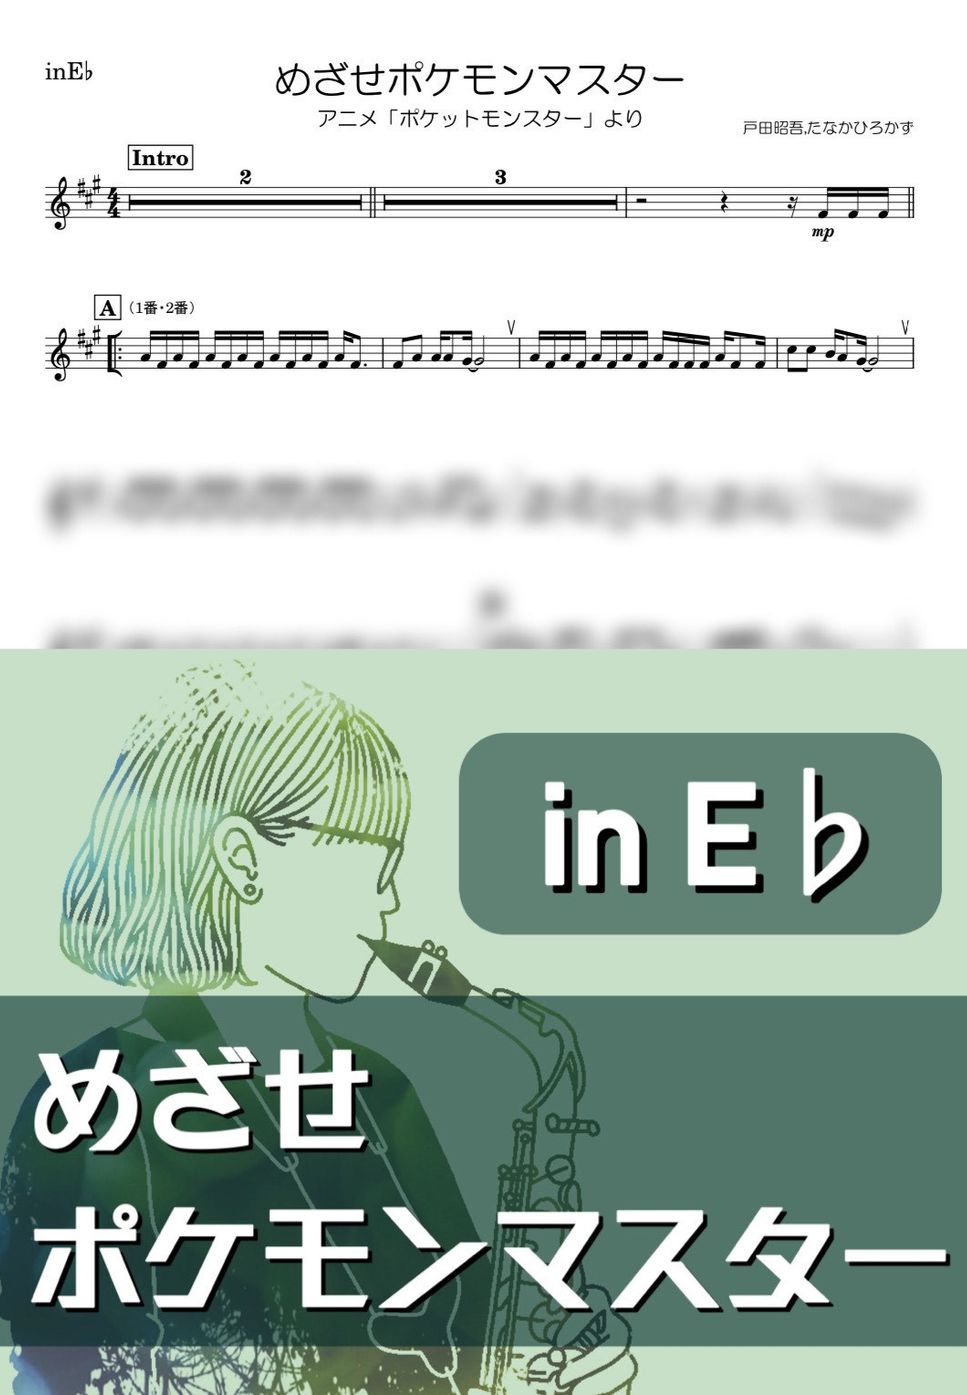 ポケモン - めざせポケモンマスター (E♭) by kanamusic